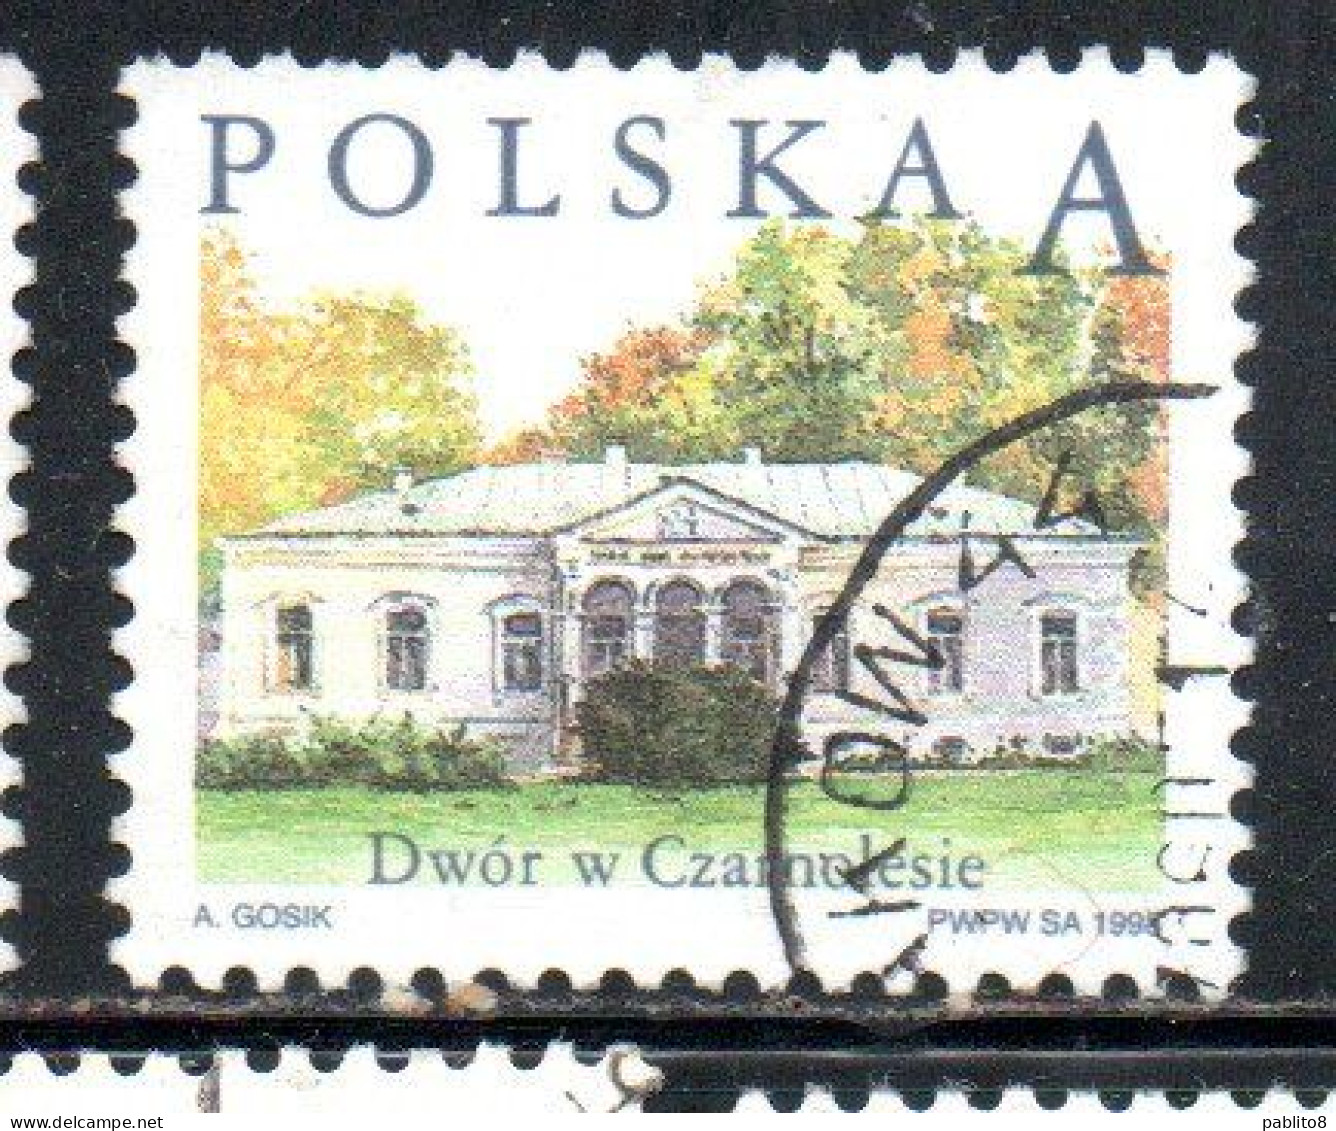 POLONIA POLAND POLSKA 1998 POLISH COUNTRY ESTATES CZARNOLESIE A USED USATO OBLITERE' - Gebraucht